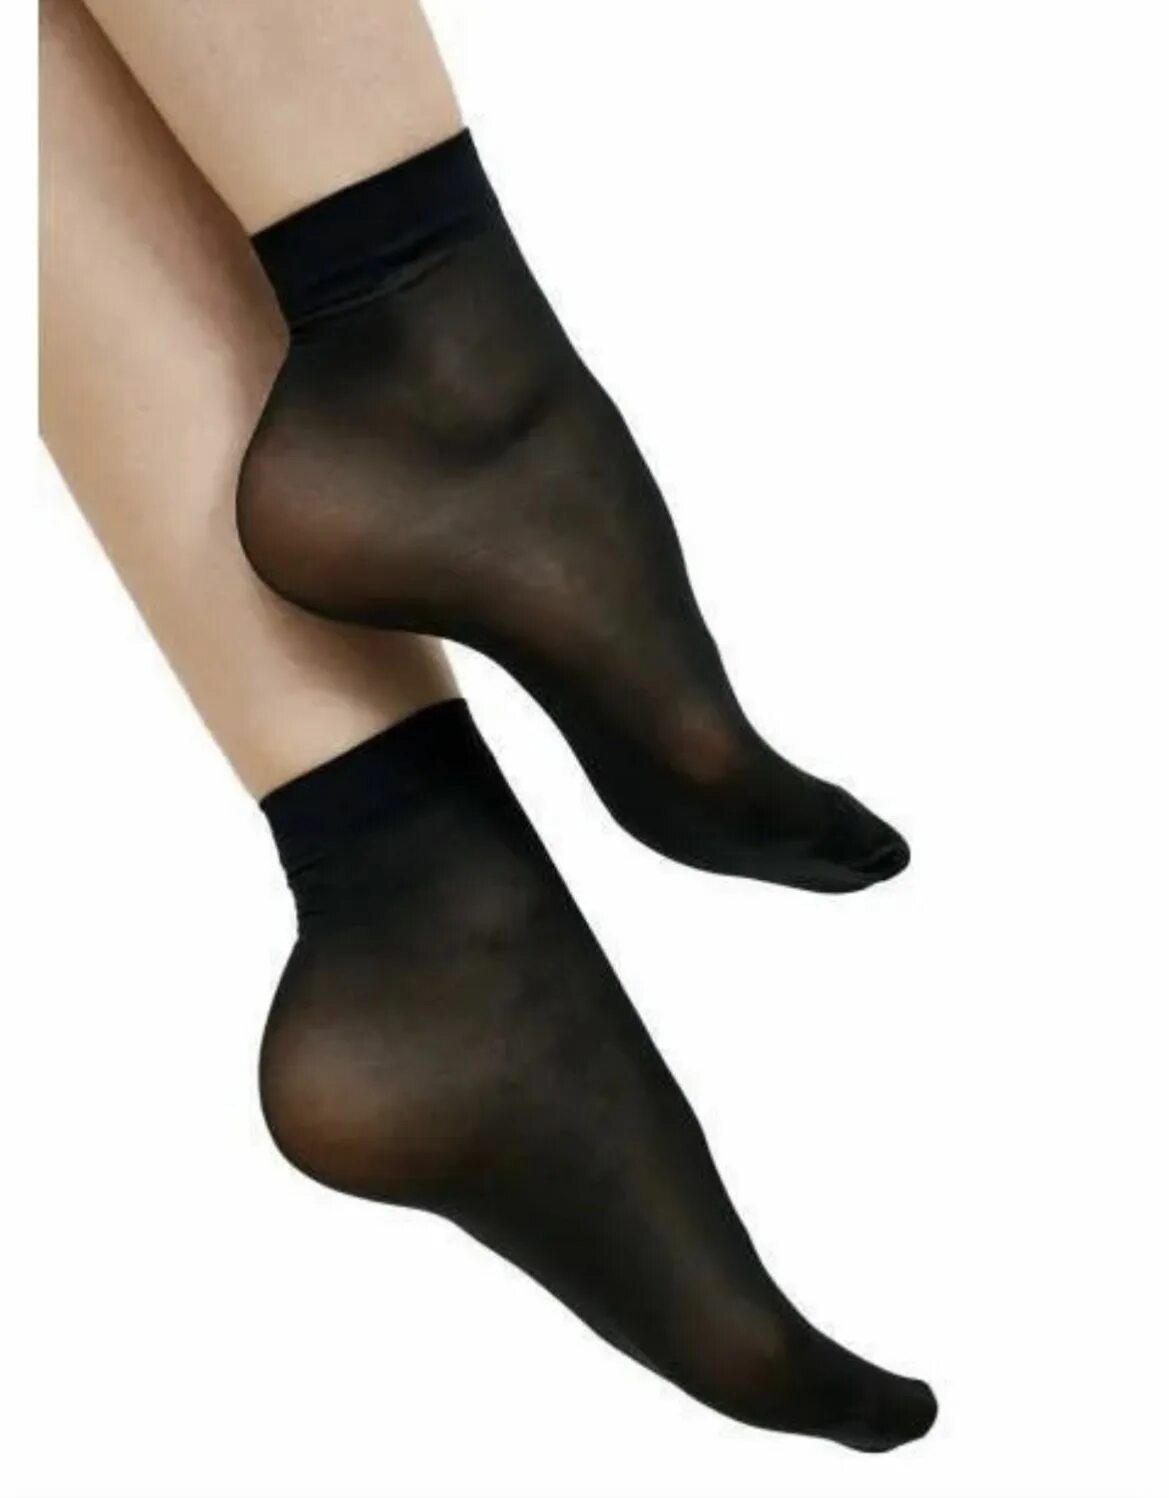 Носки капроновые женские. Носки капроновые черные. Широкие капроновые носки. Носки капрон